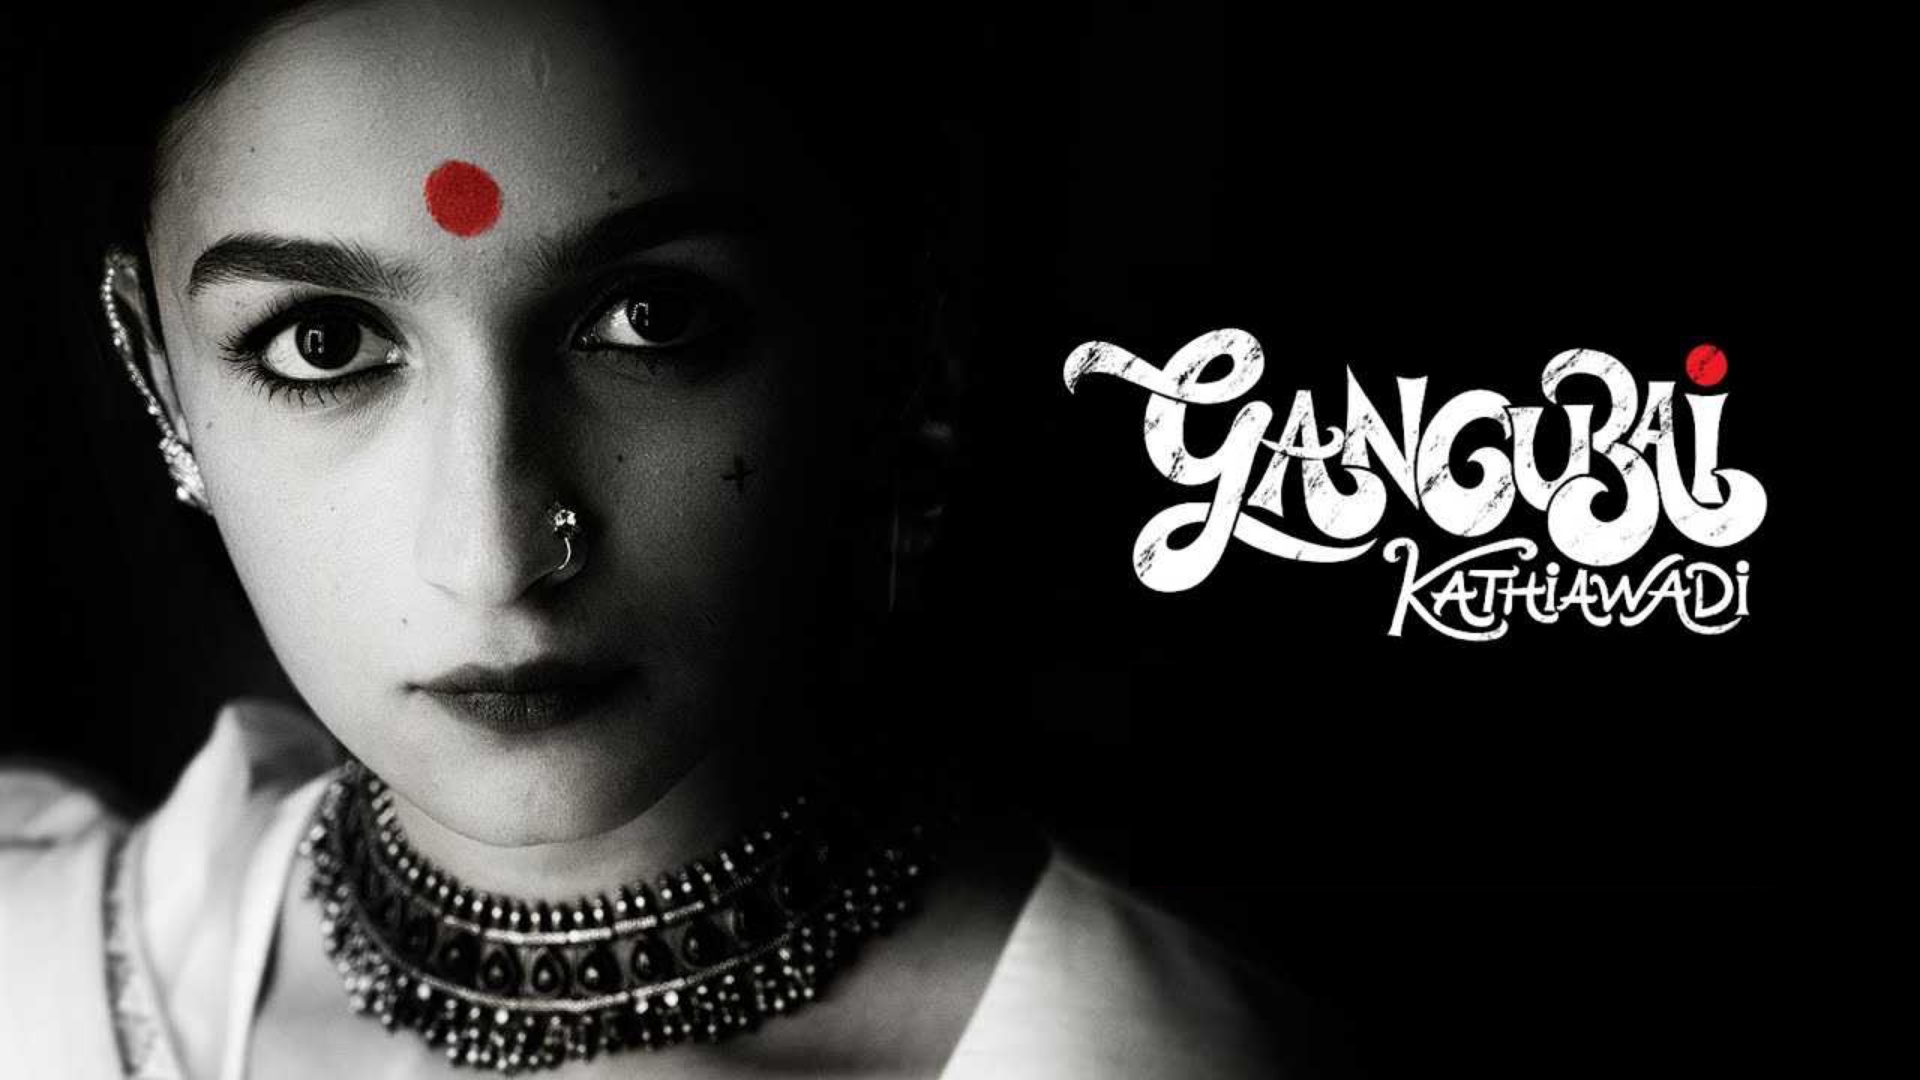 [รีวิว] Gangubai Kathiawadi : มาเฟียควีนกับส่าหรีขาวของเธอ